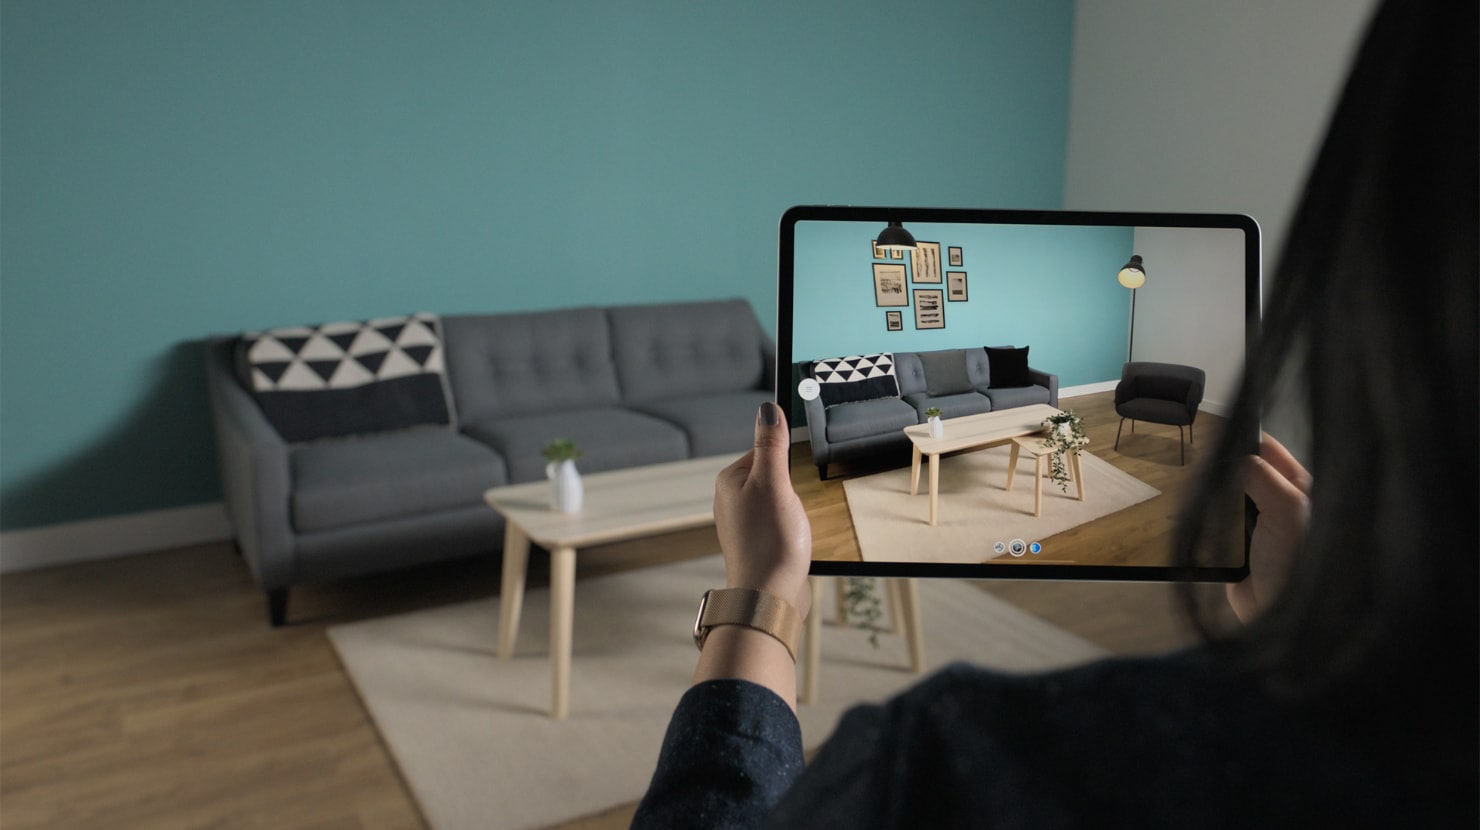 AI in Interior Design – Live Home 3D